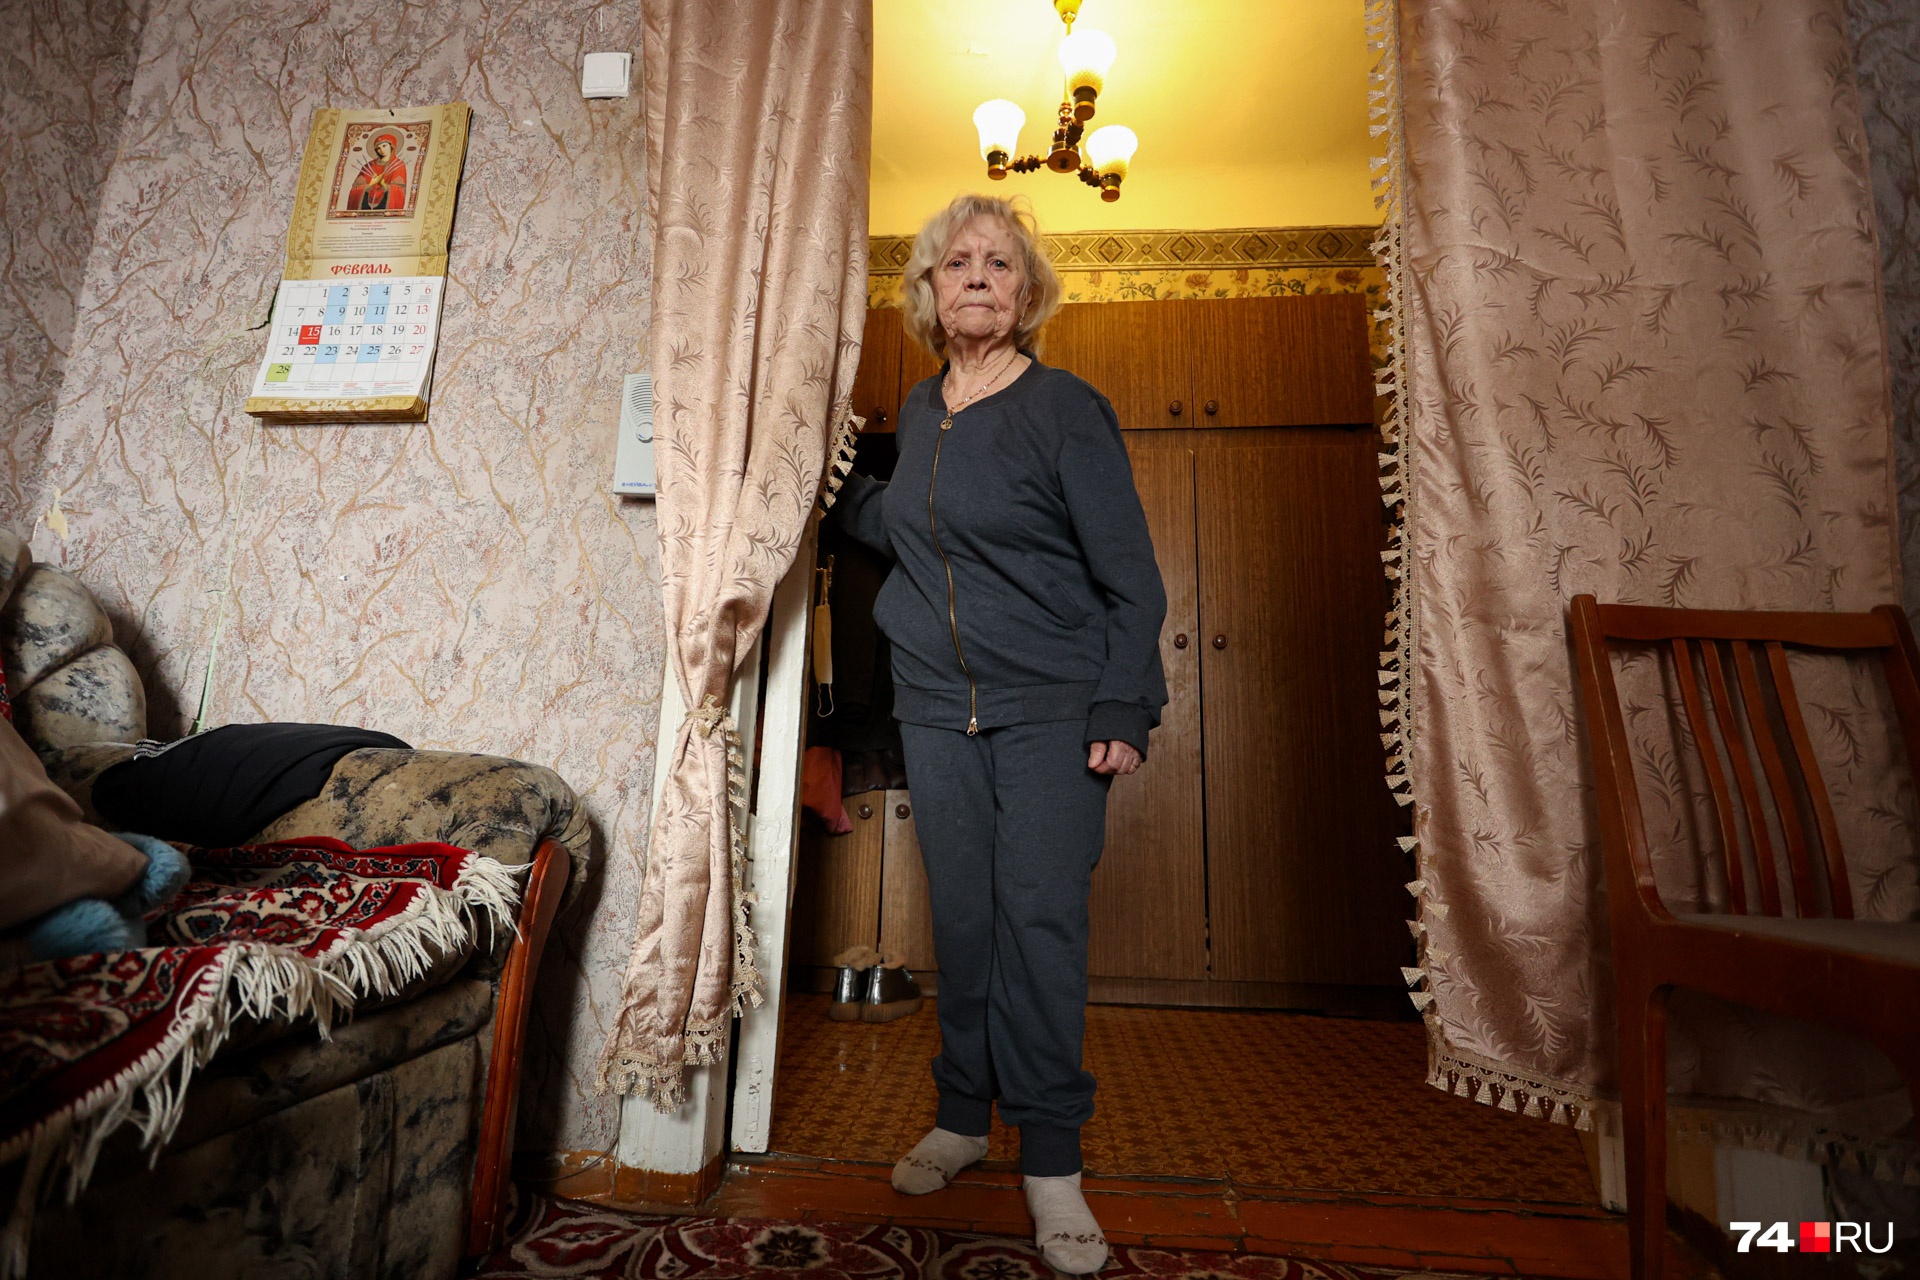 Квартира, на которую ветеран честным трудом зарабатывала долгие годы, больше не принадлежит ей